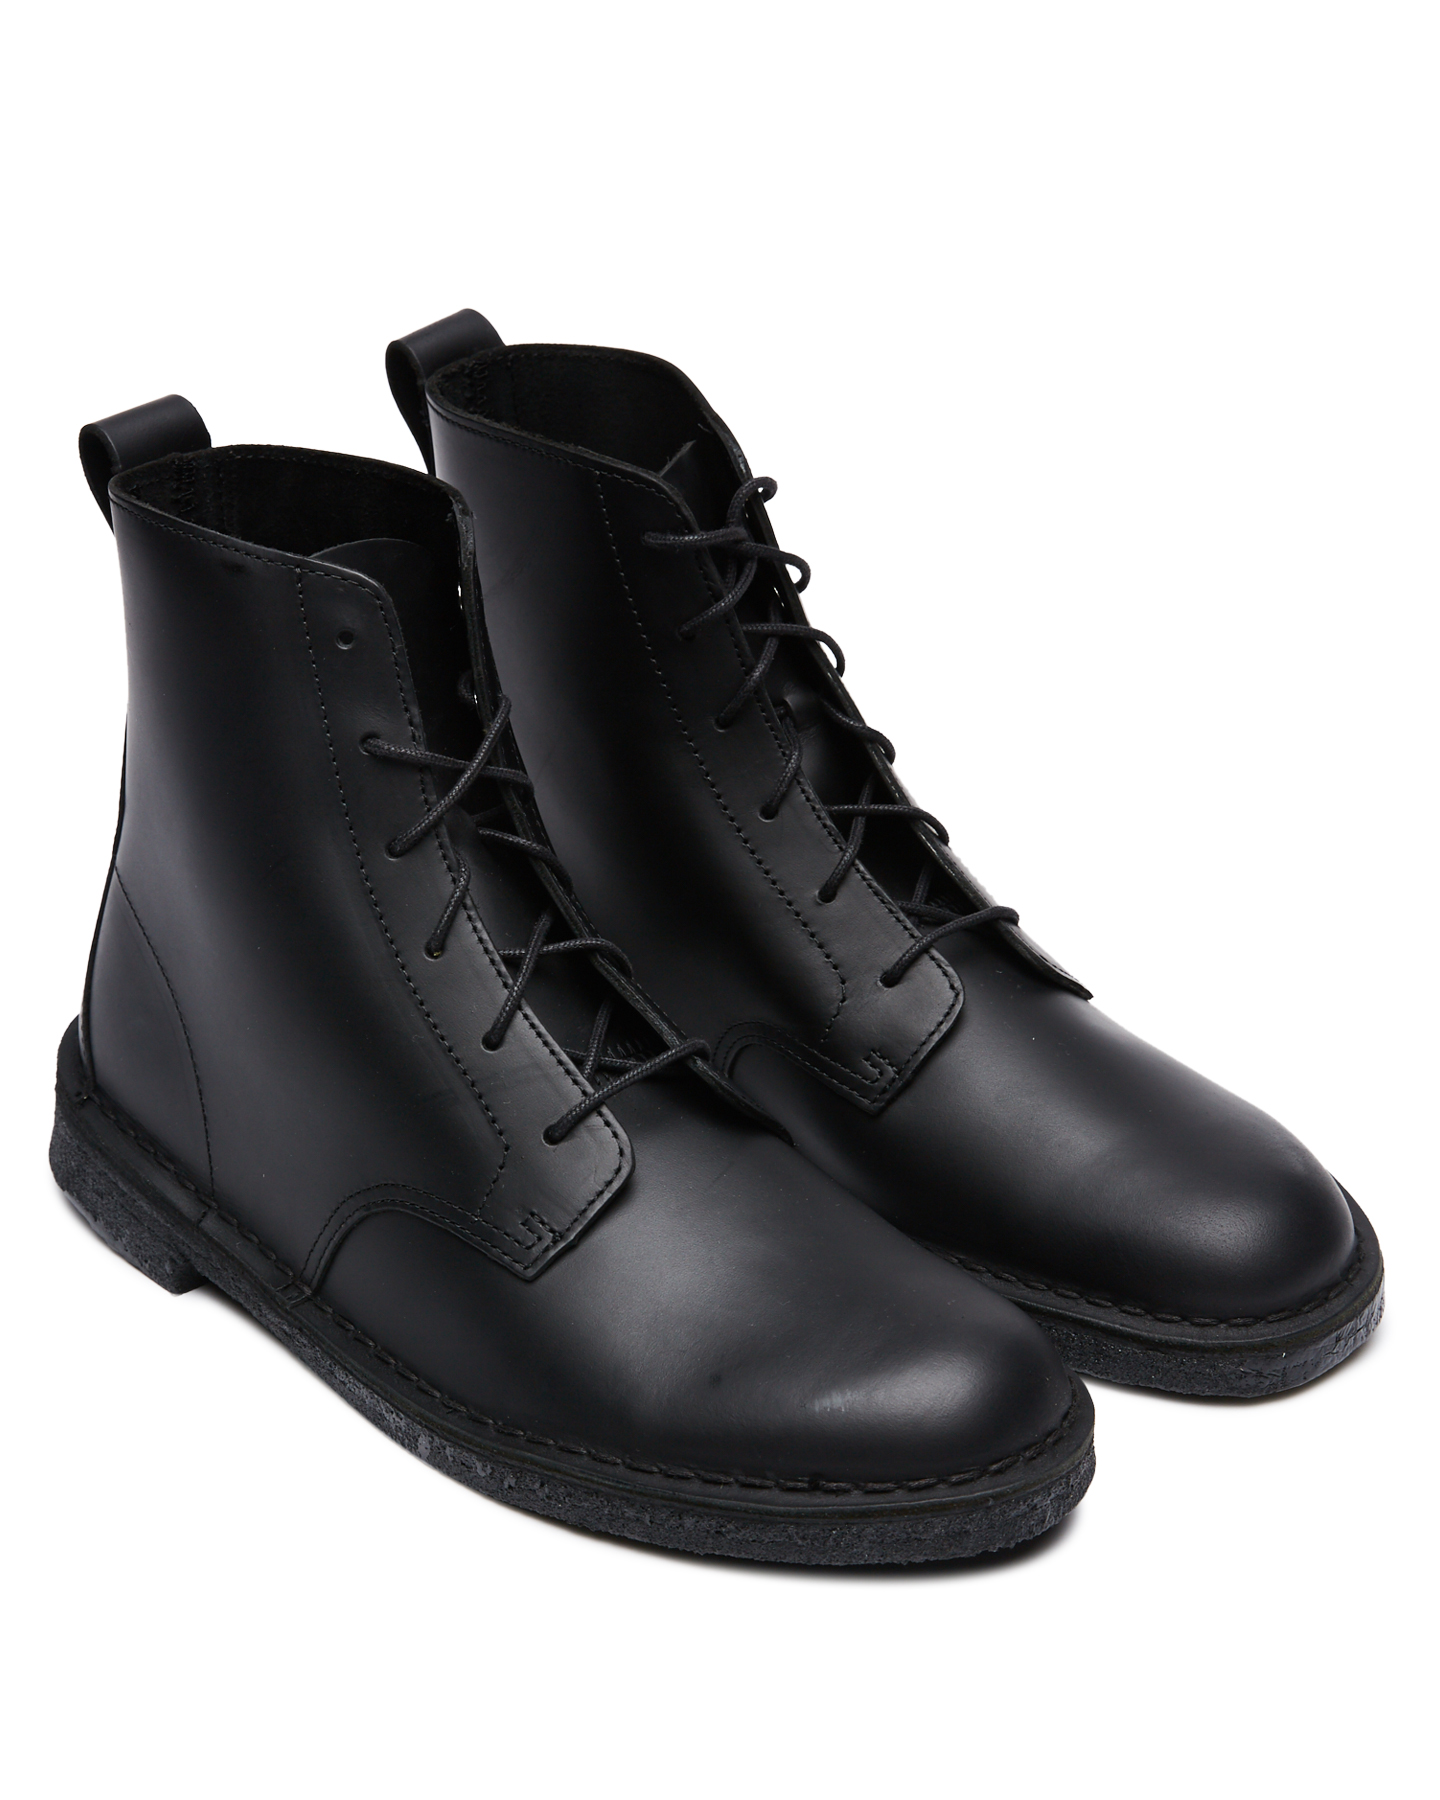 clarks desert mali boot black leather